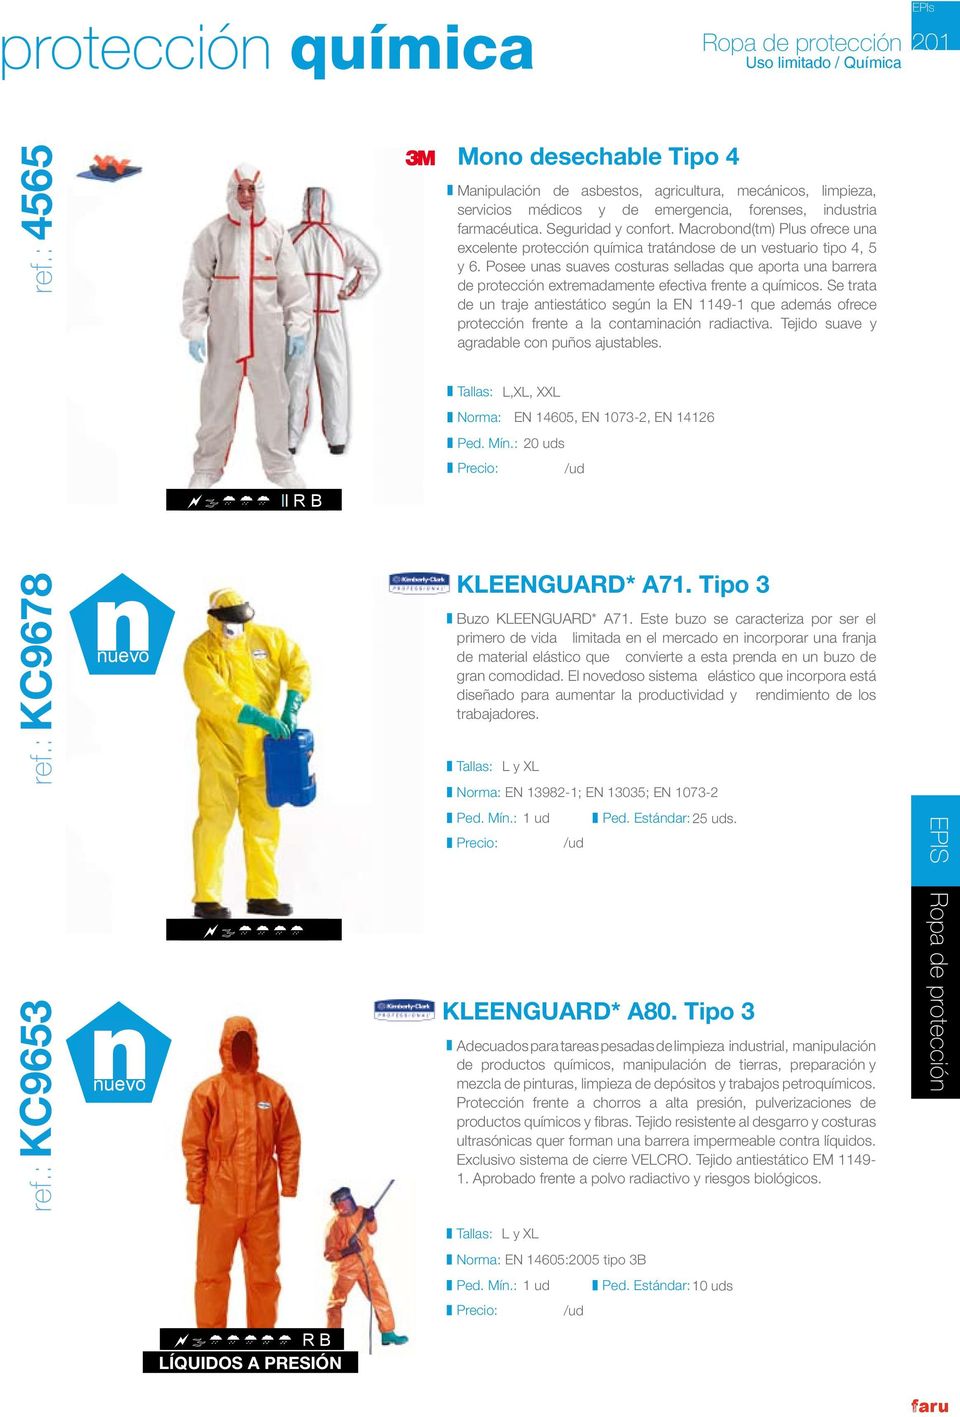 Macrobond(tm) Plus ofrece una excelente protección química tratándose de un vestuario tipo 4, 5 y 6.